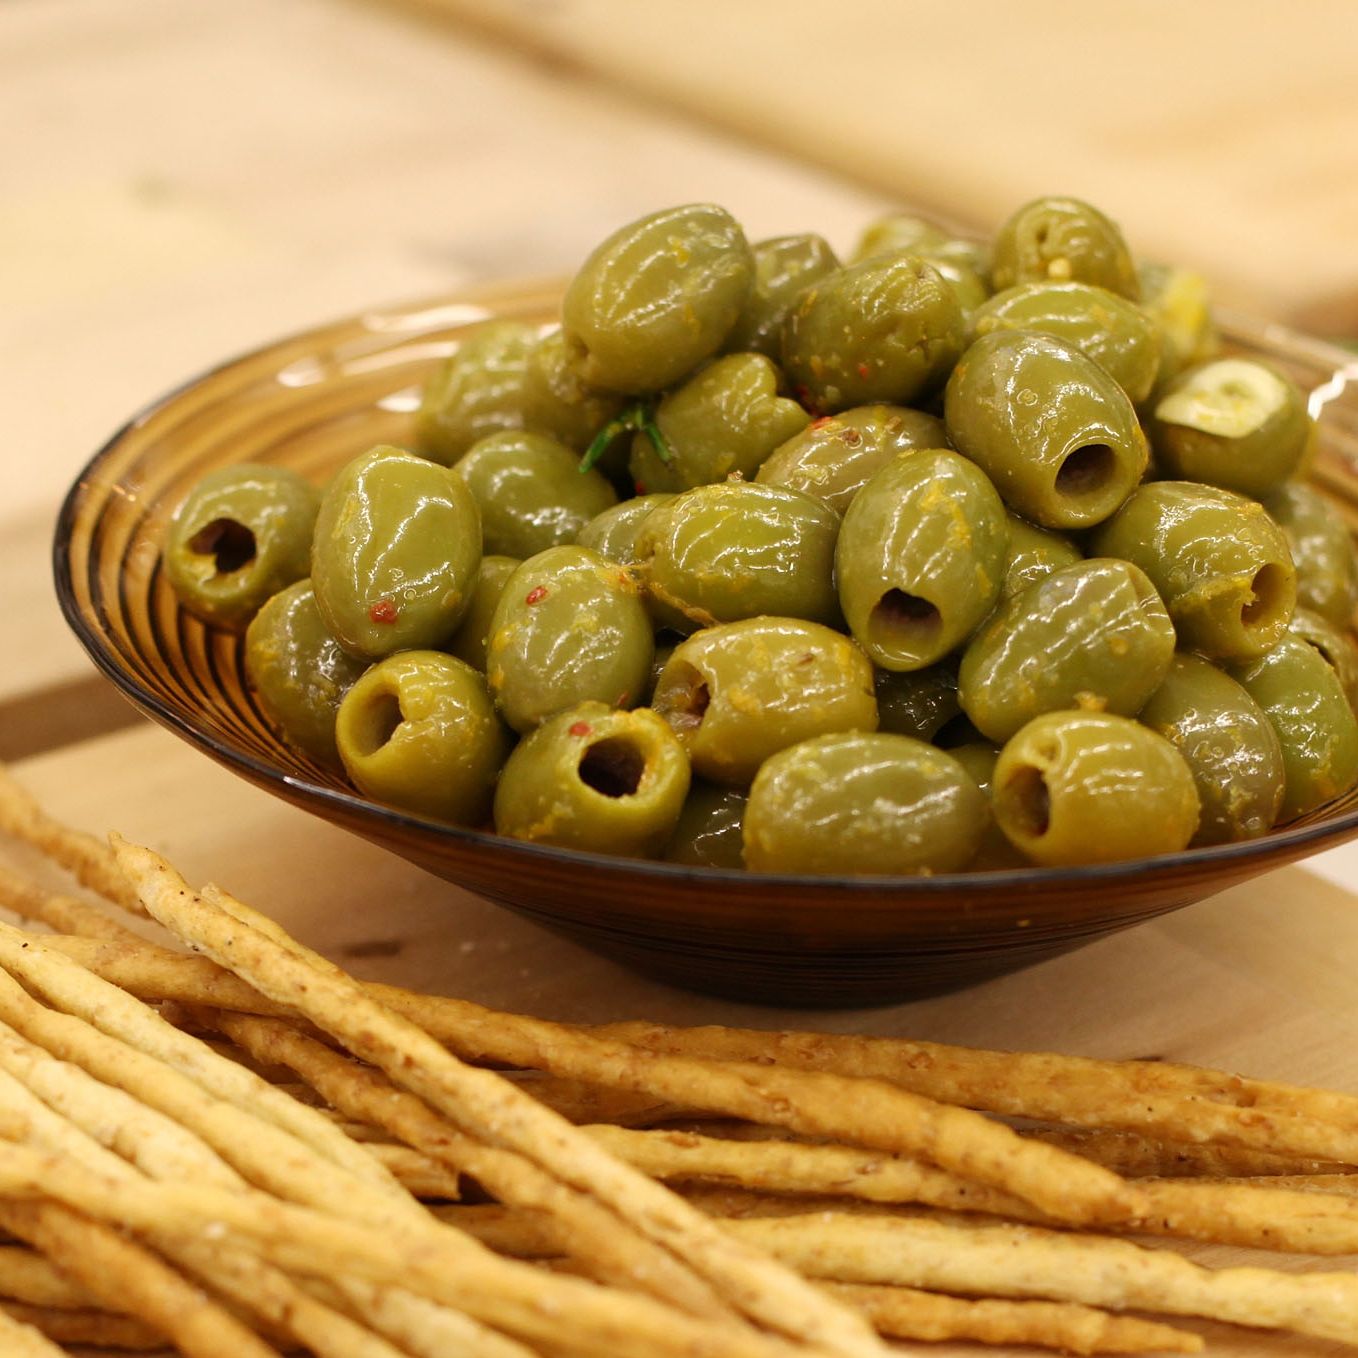 Гръцки плодове и зеленчуци, зехтин и риба вече били сред доминиращите стоки на българския пазар